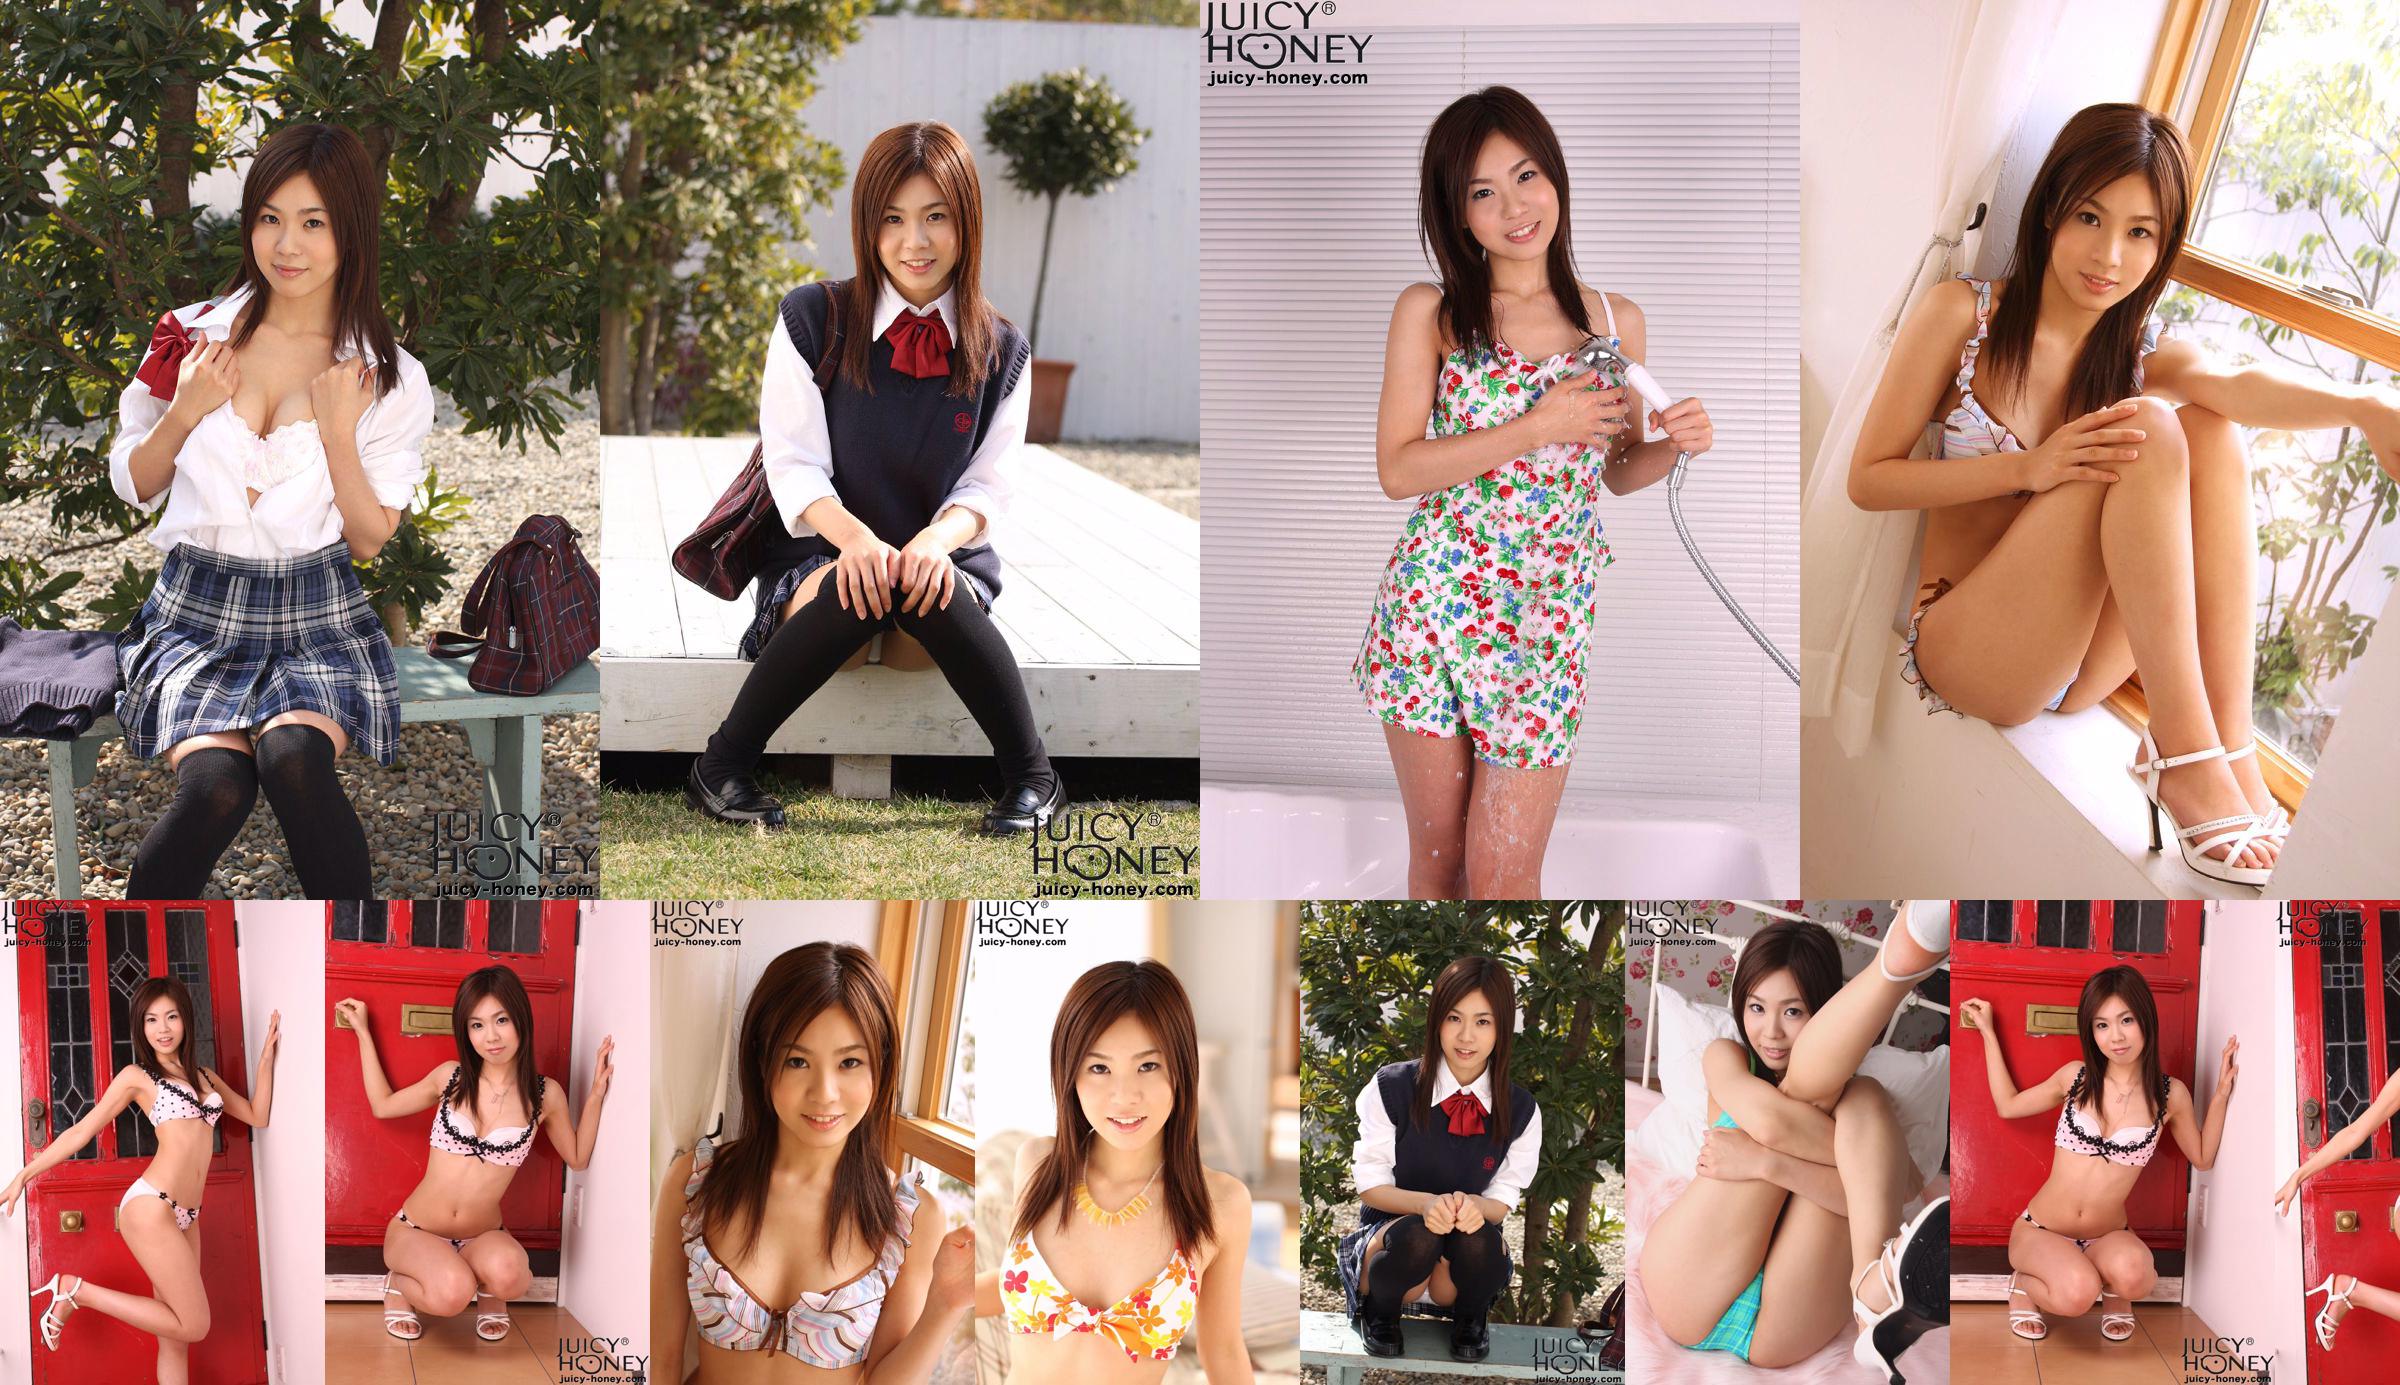 [Juicy Honey] jh062 Miri Yaguchi "Rookie Edition 2009" No.4c9e2b Page 1